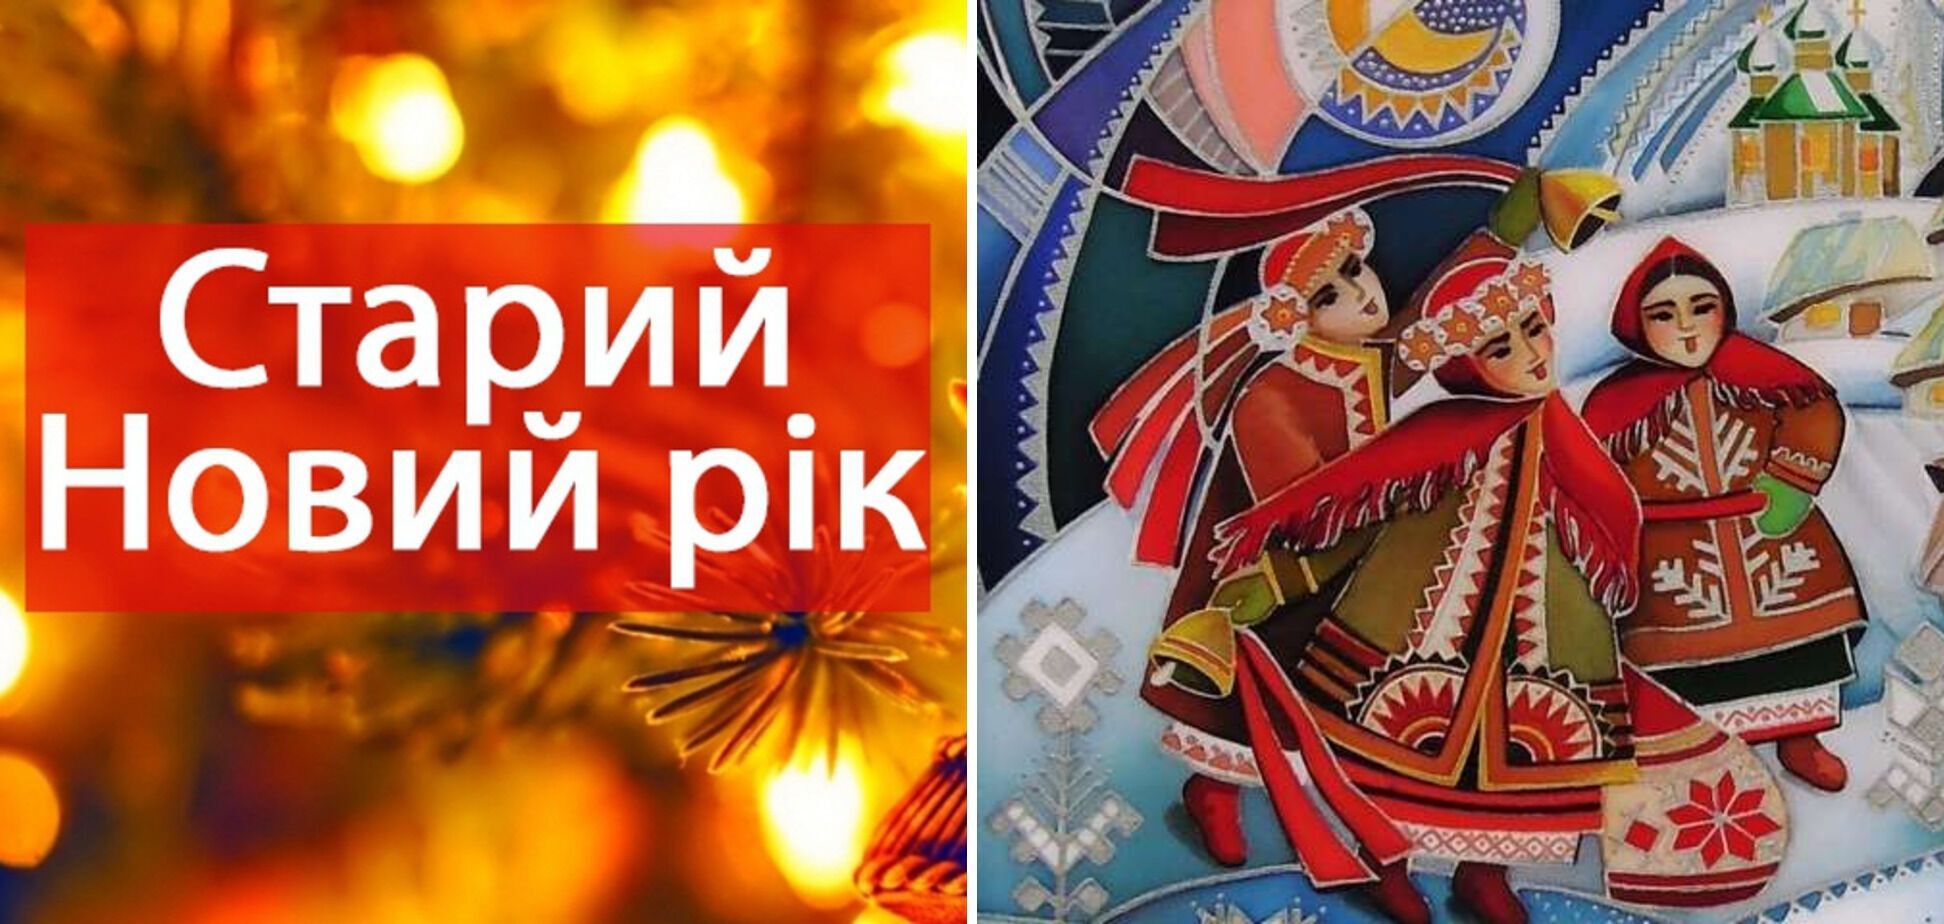 Поздравления на Старый Новый год: красивые украинские пожелания друзьям и близким